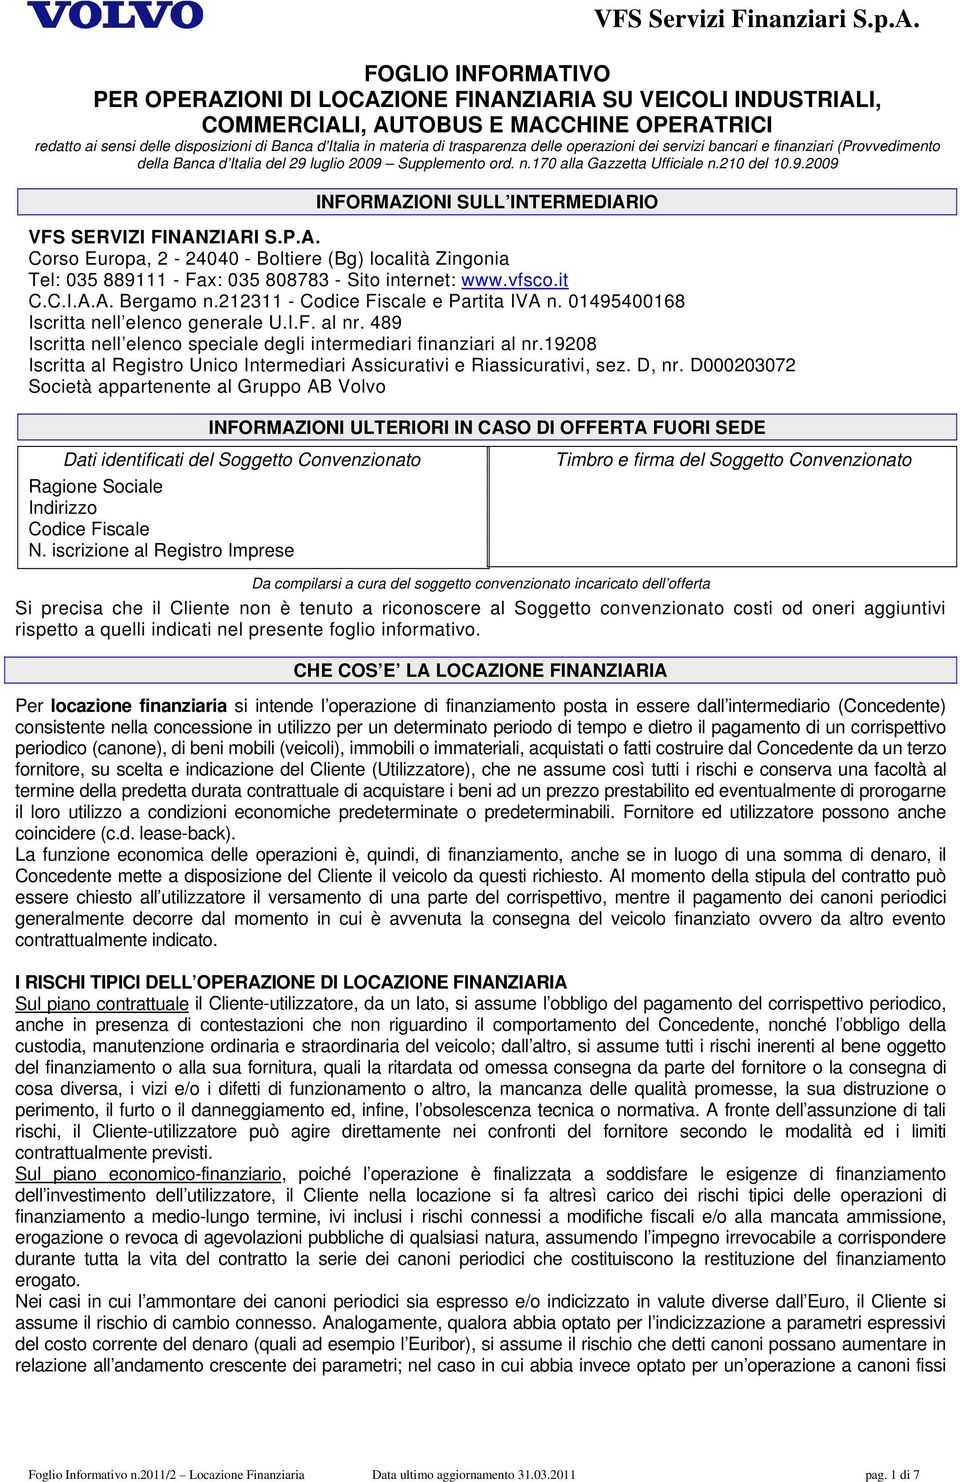 P.A. Corso Europa, 2-24040 - Boltiere (Bg) località Zingonia Tel: 035 889111 - Fax: 035 808783 - Sito internet: www.vfsco.it C.C.I.A.A. Bergamo n.212311 - Codice Fiscale e Partita IVA n.